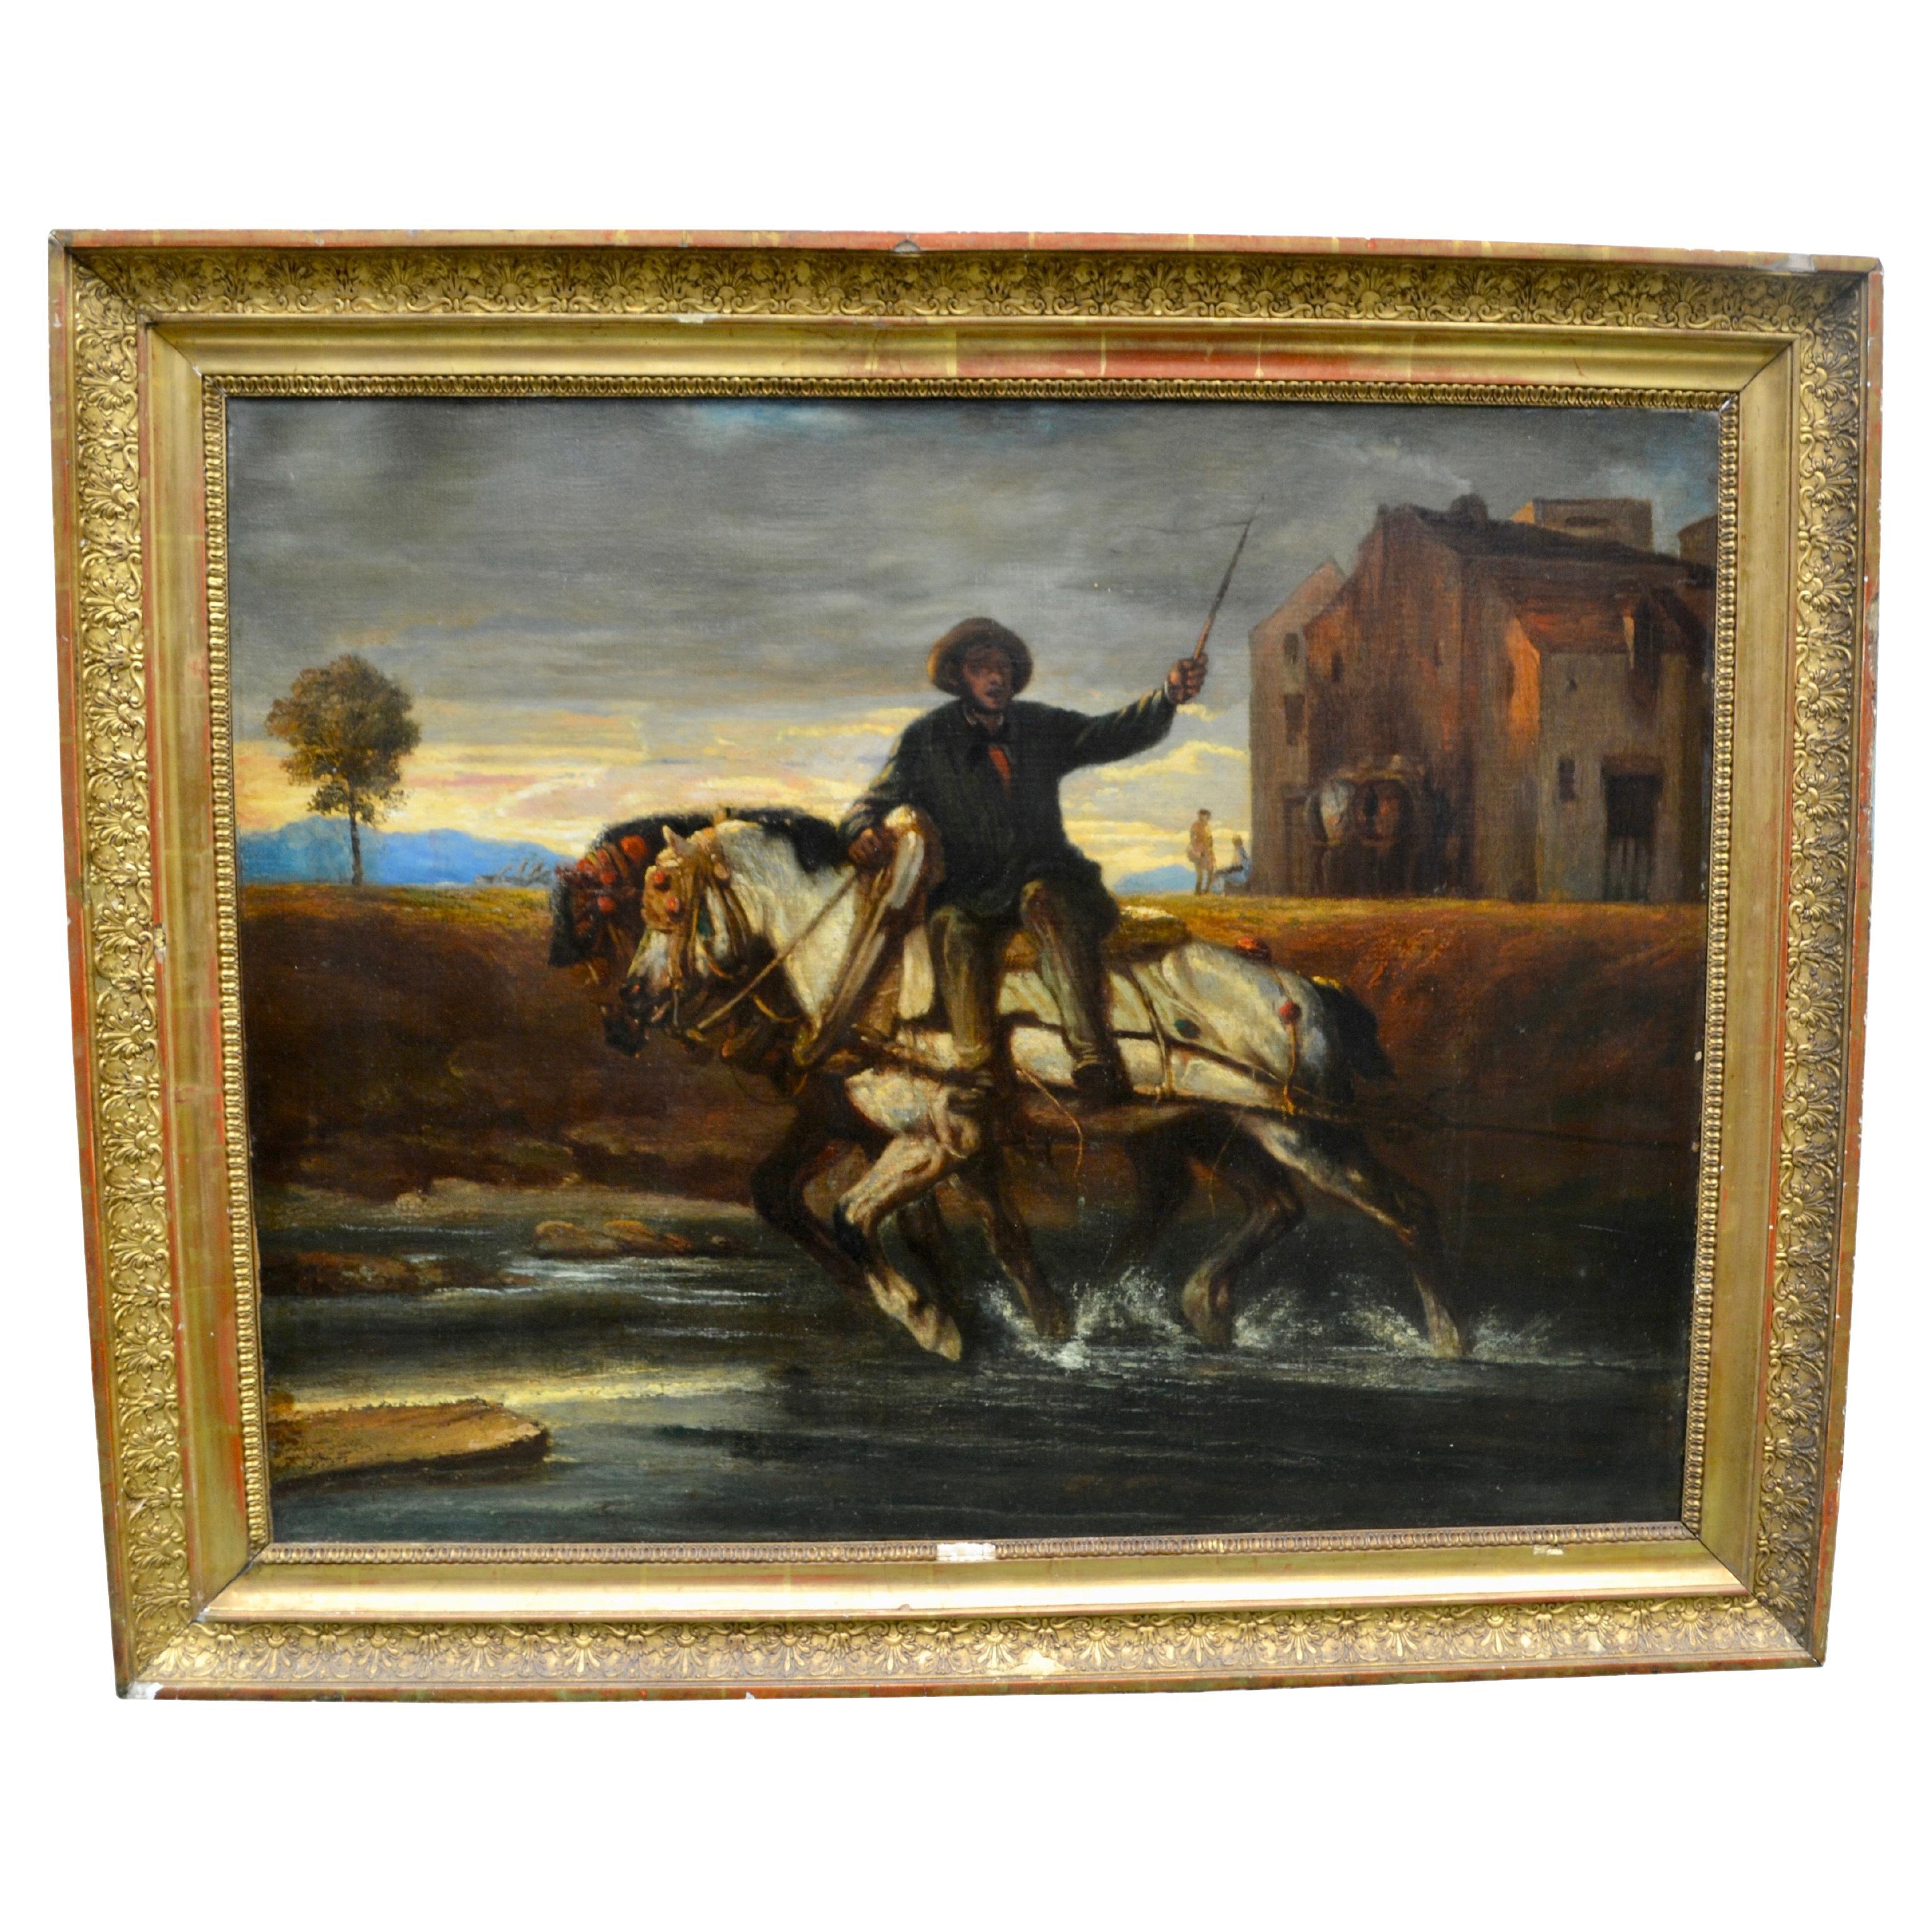 Scène de ferme impressionniste du 19e siècle avec deux chevaux jumeaux